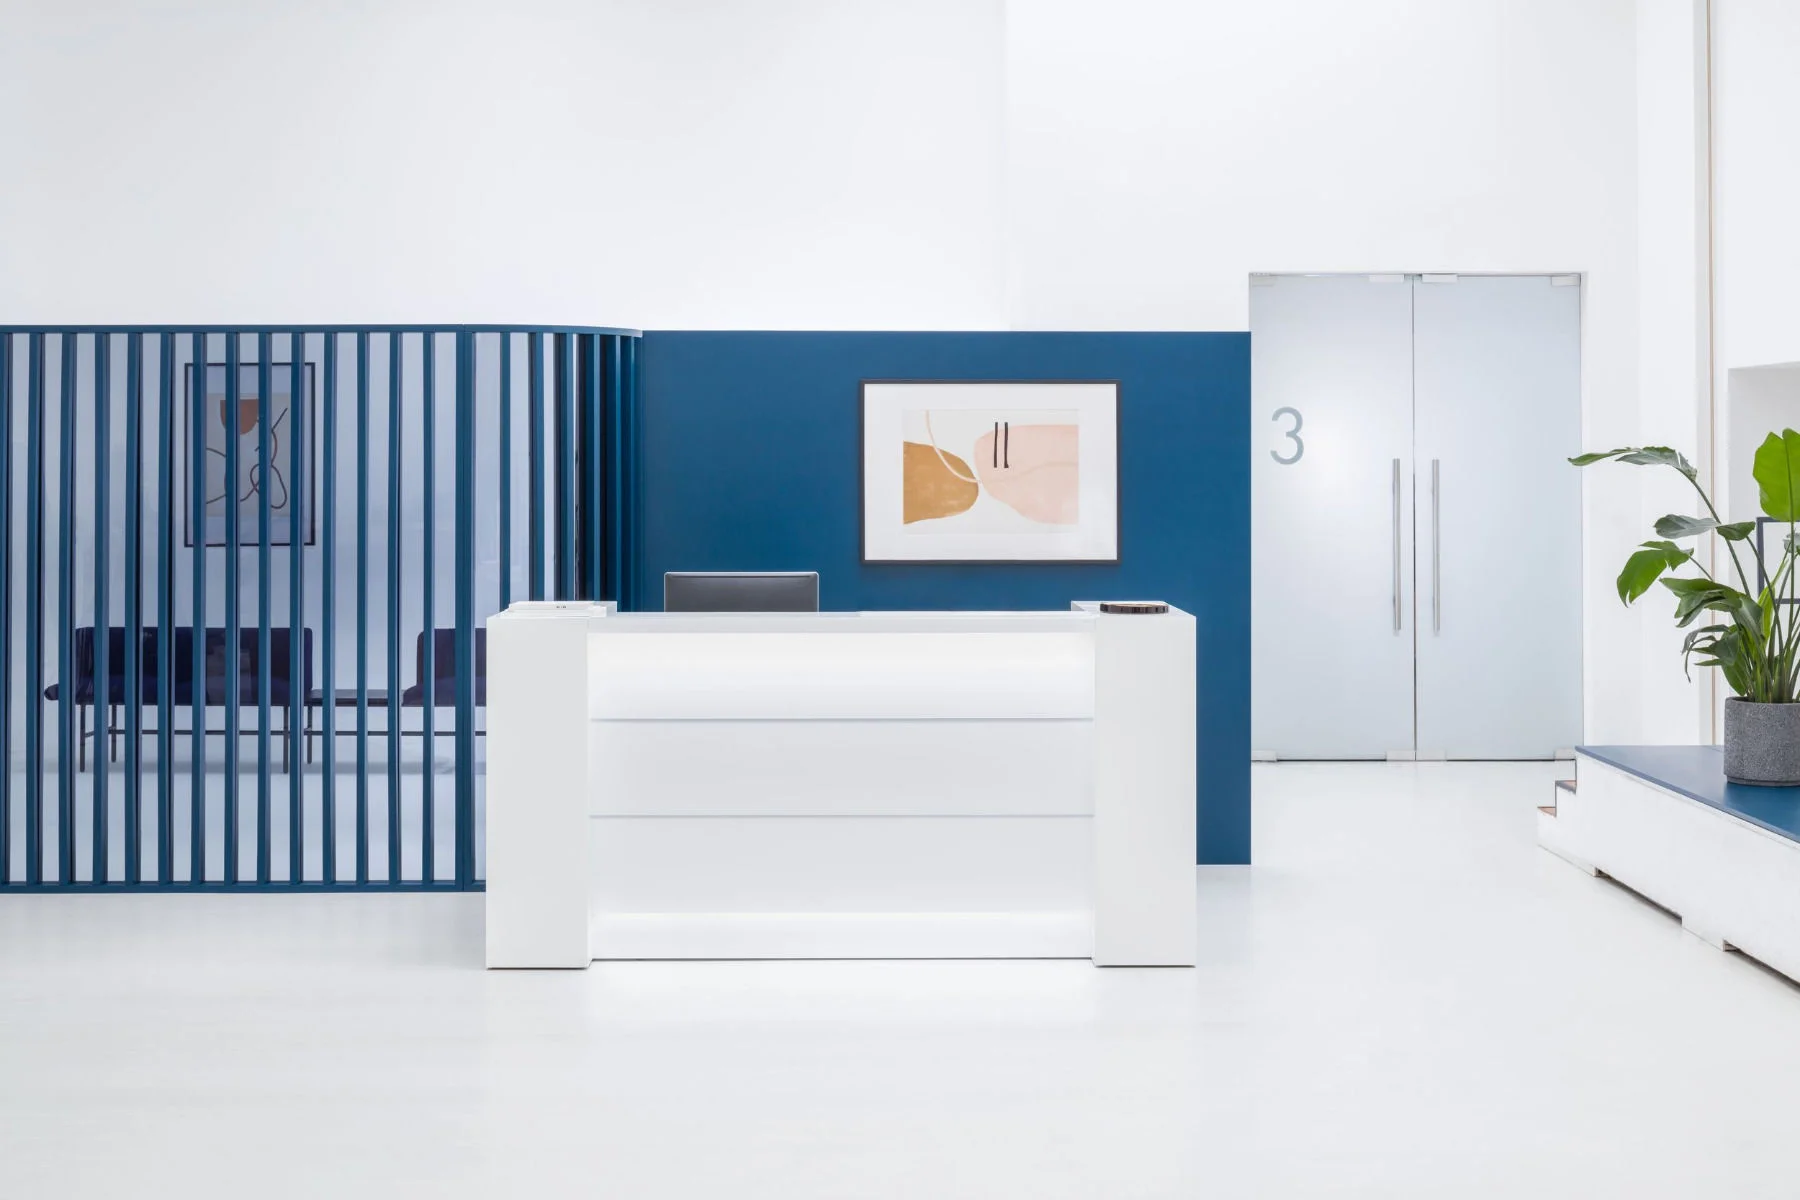 Banque d'accueil MDD valde mobilier de bureau professionnel, forme dynamique, conception modulaire